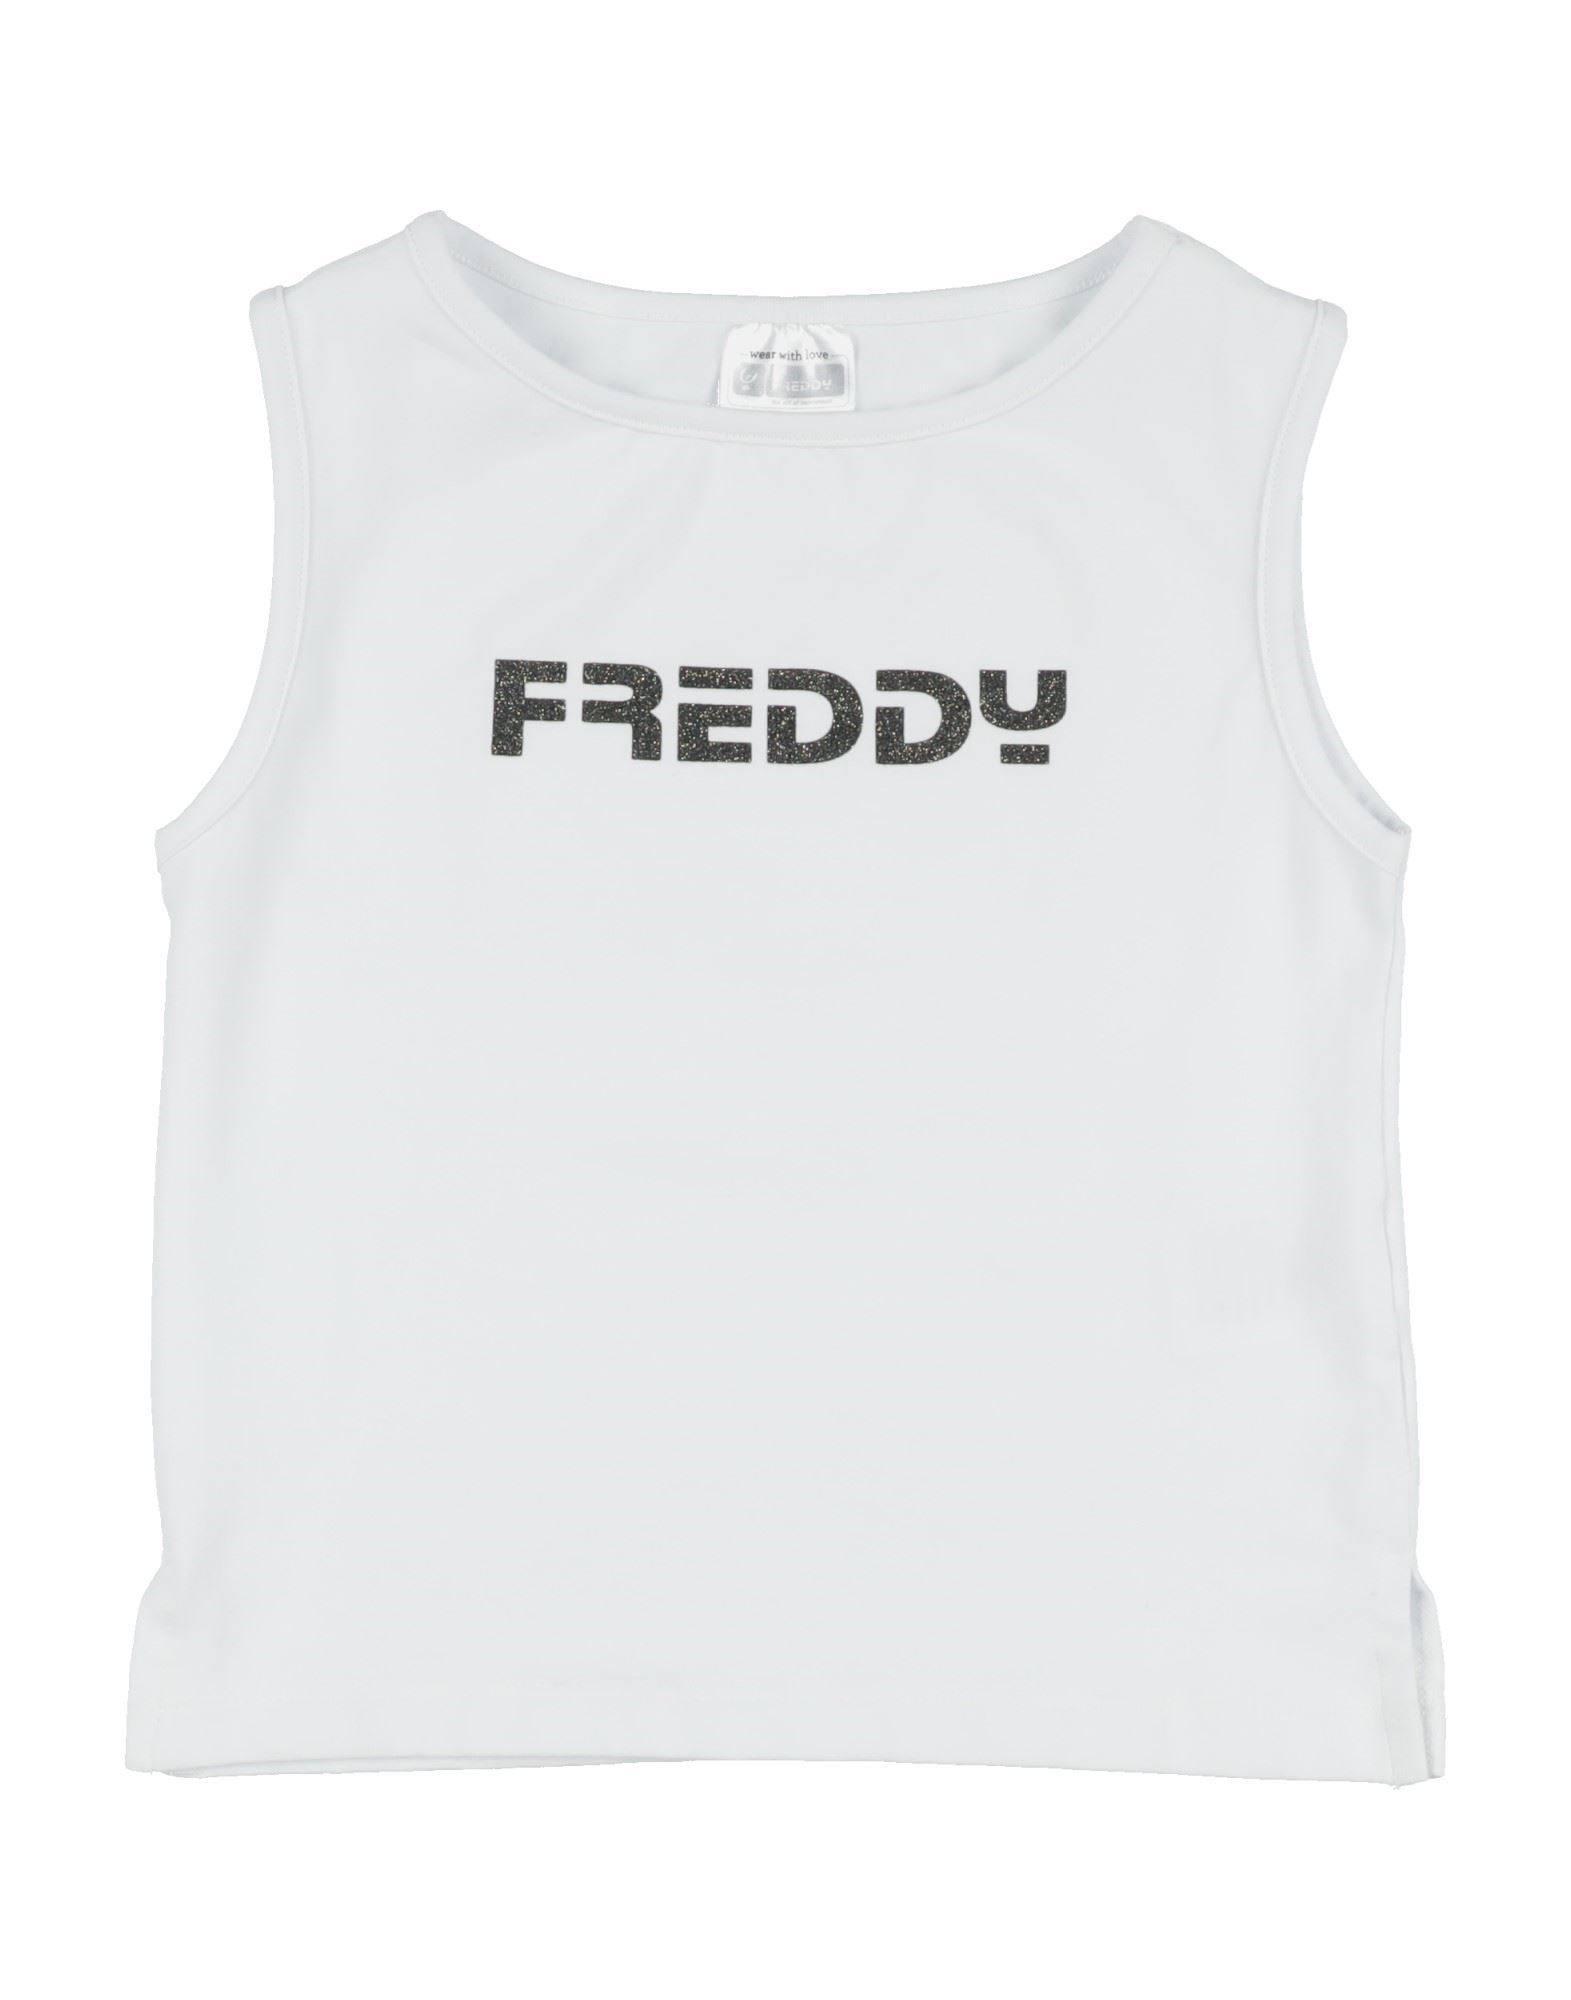 FREDDY FREDDY T-SHIRTS